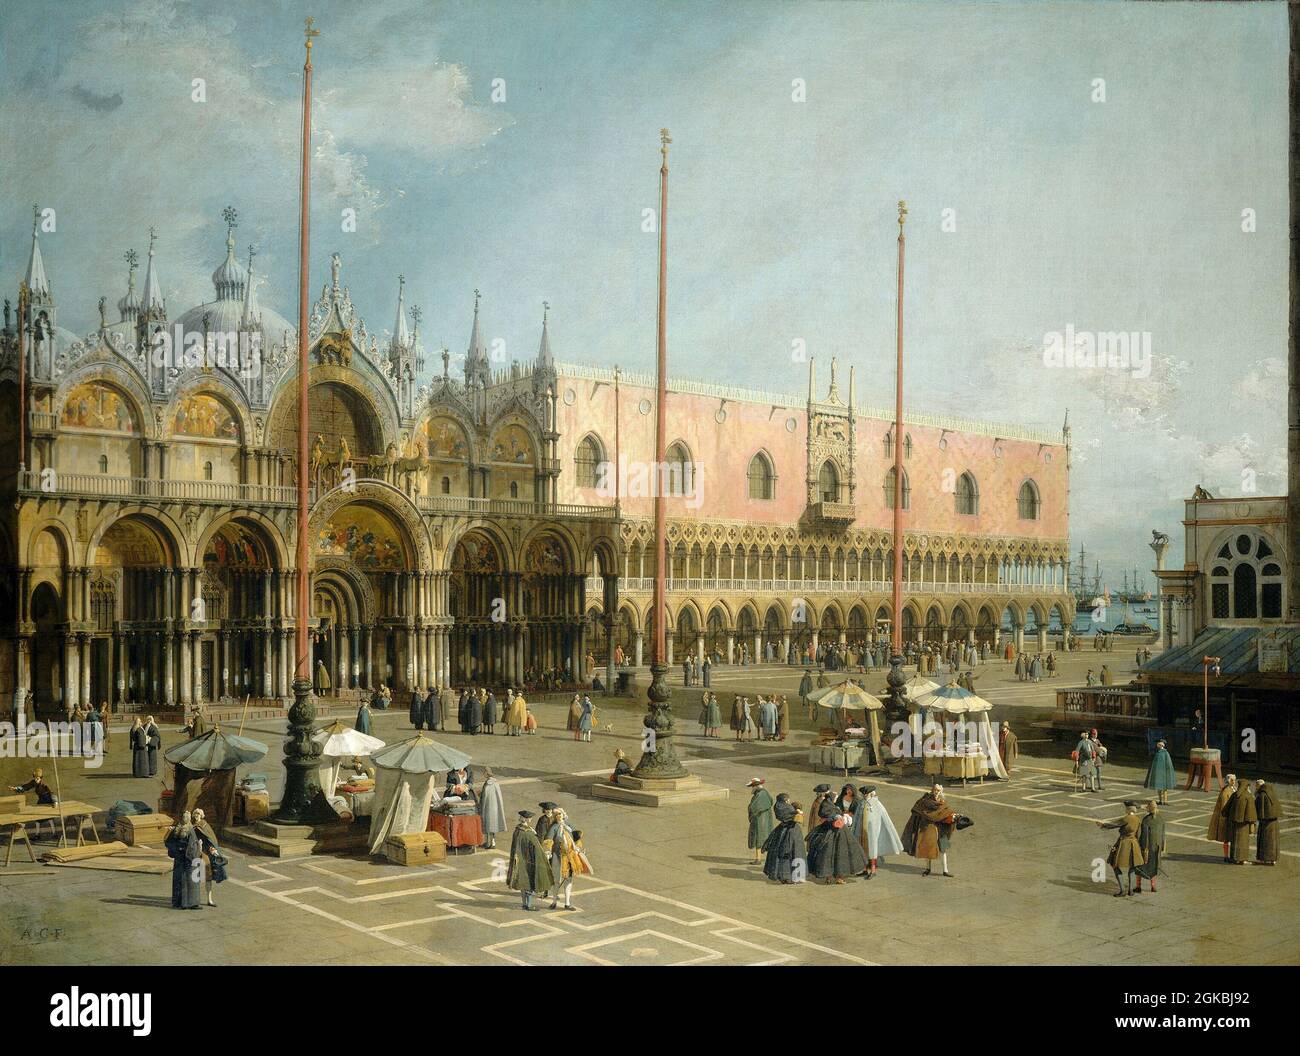 Artista: Canaletto (Giovanni Antonio Canal, 1697-1768) Título: Piazza San Marco. Año: Entre 1742 y 1744 Foto de stock